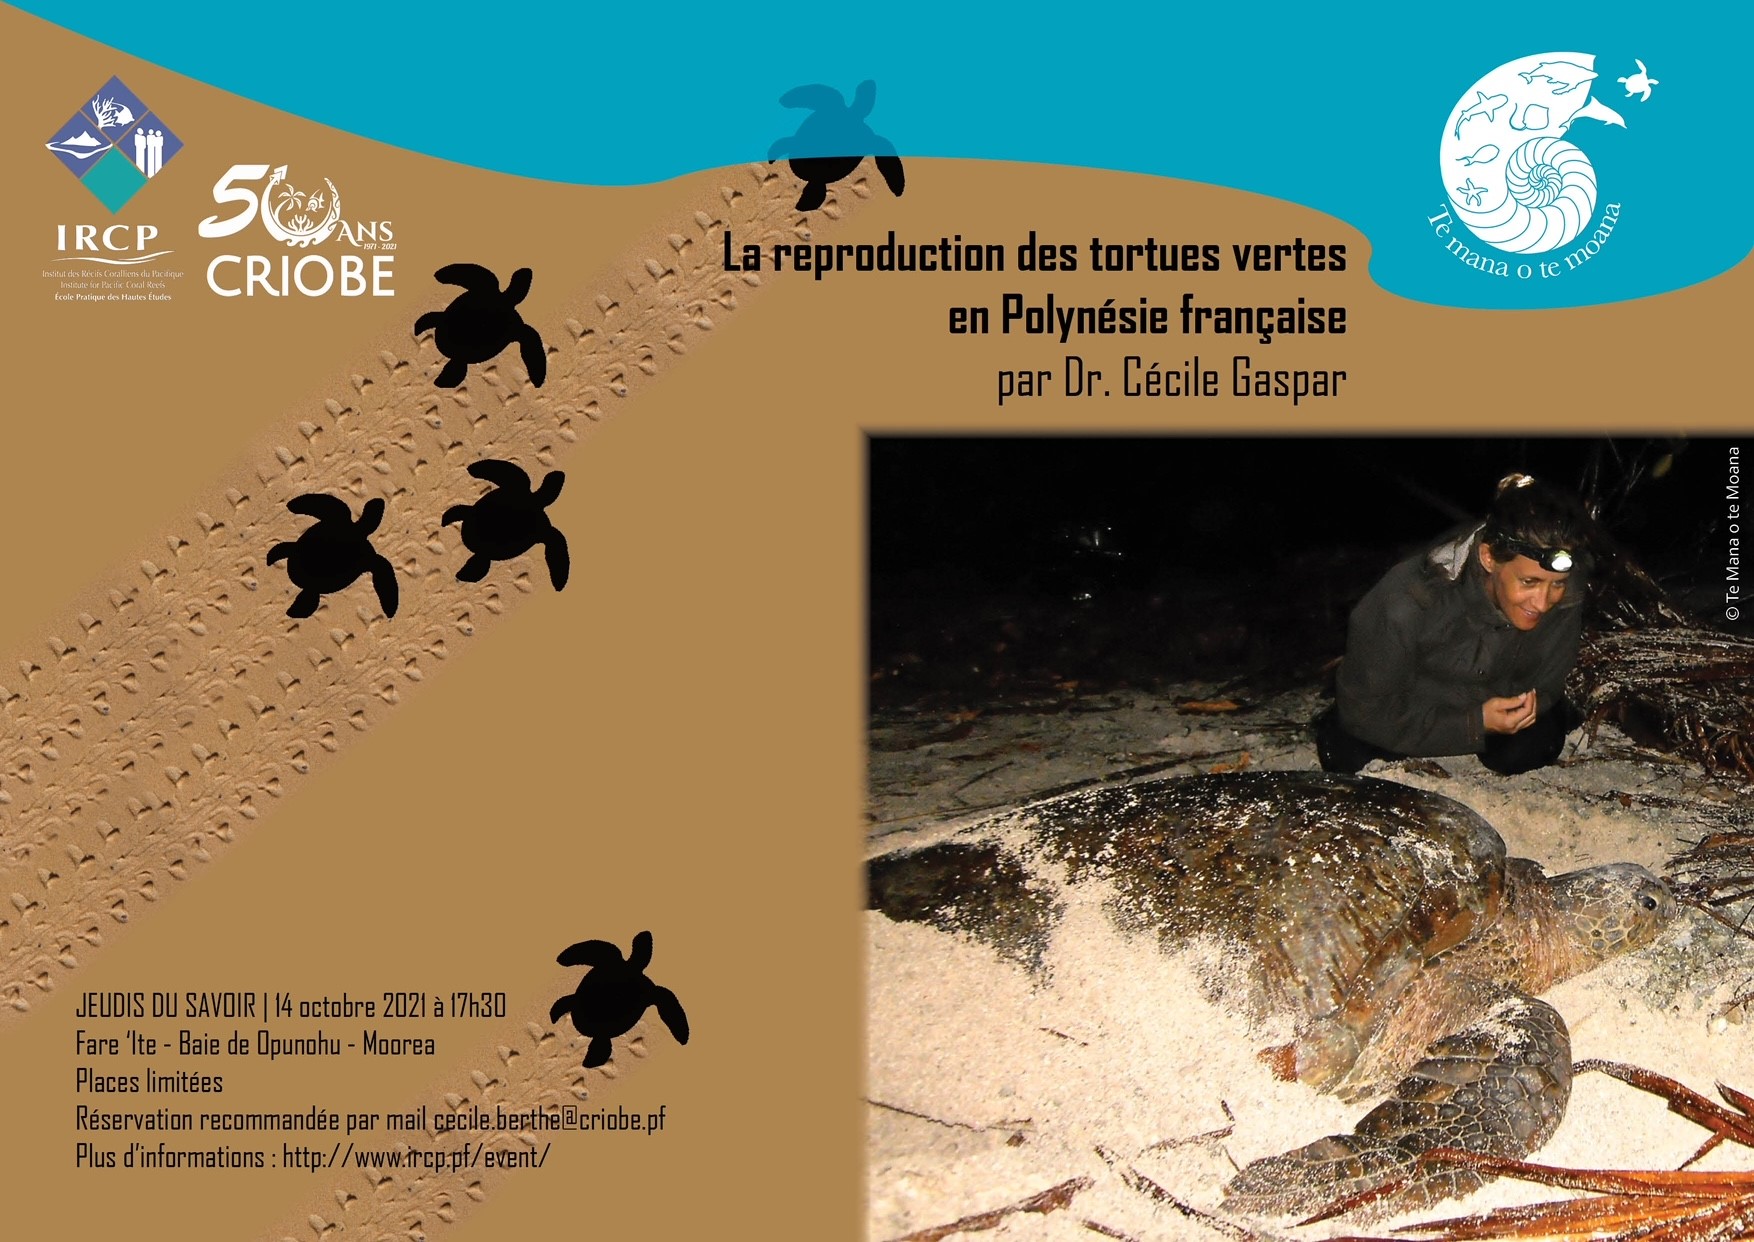 Les Jeudis du savoir | La reproduction des tortues vertes en Polynésie française | Criobe